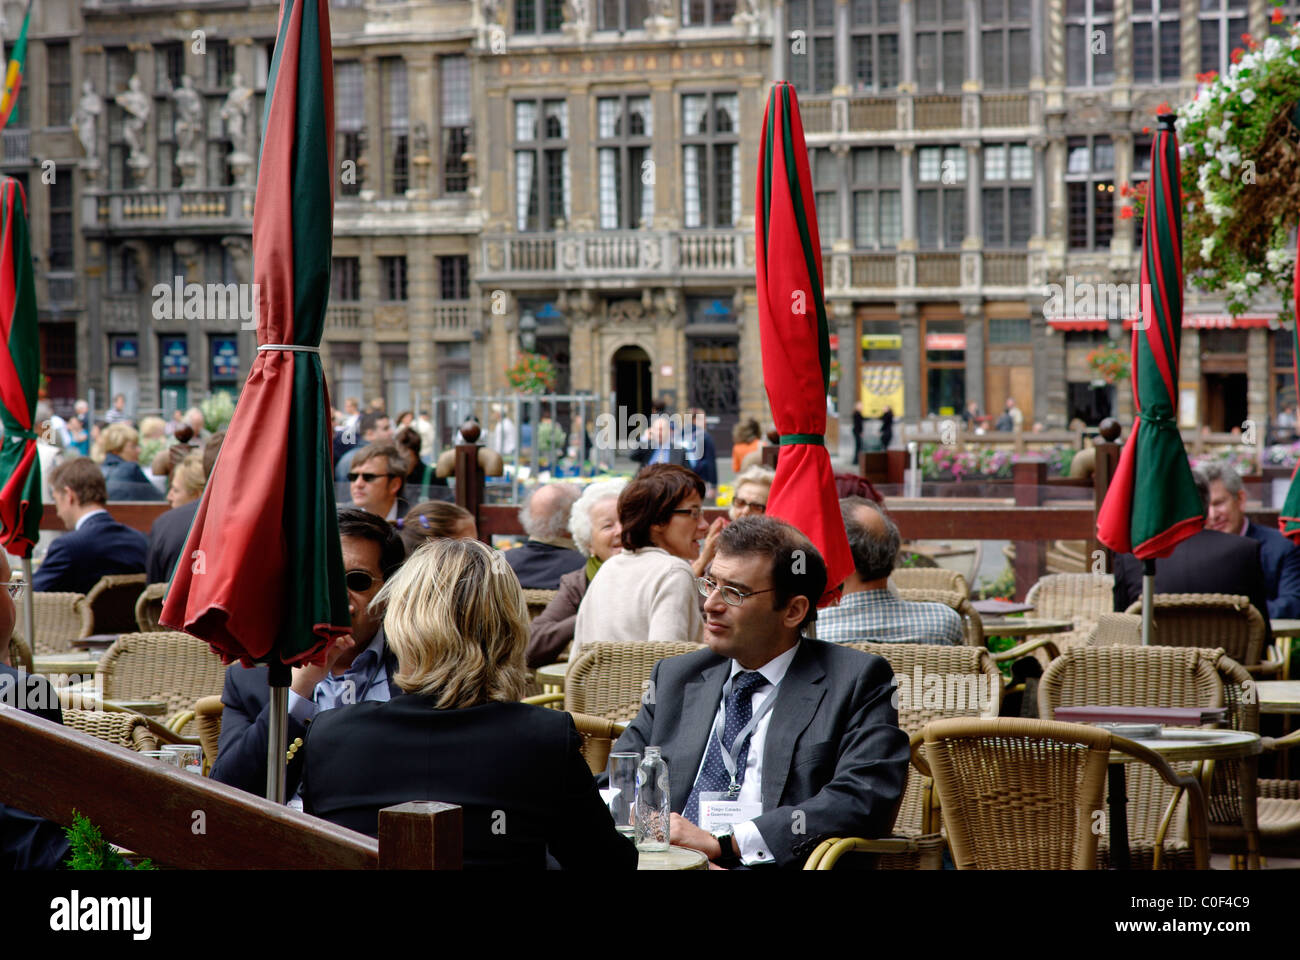 Tiago Caiado Guerreiro, bénéficie d'un verre dans un café de la Grand Place, en Belgique, Bruxelles Banque D'Images